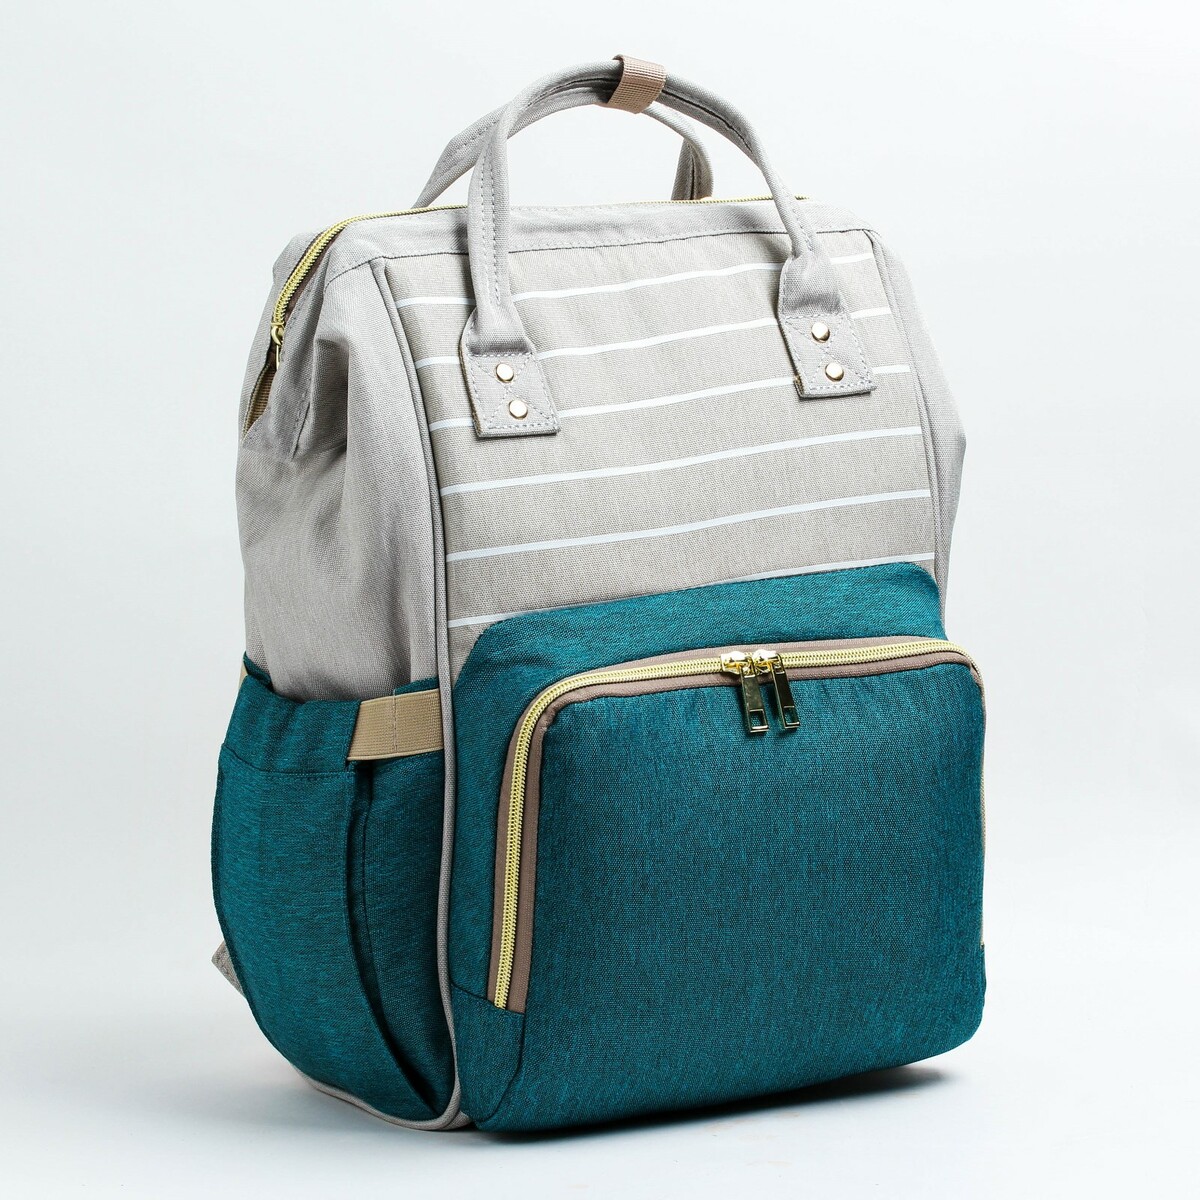 Рюкзак женский с термокарманом, термосумка - портфель, цвет серый/зеленый рюкзак женский с термокарманом термосумка портфель серый синий